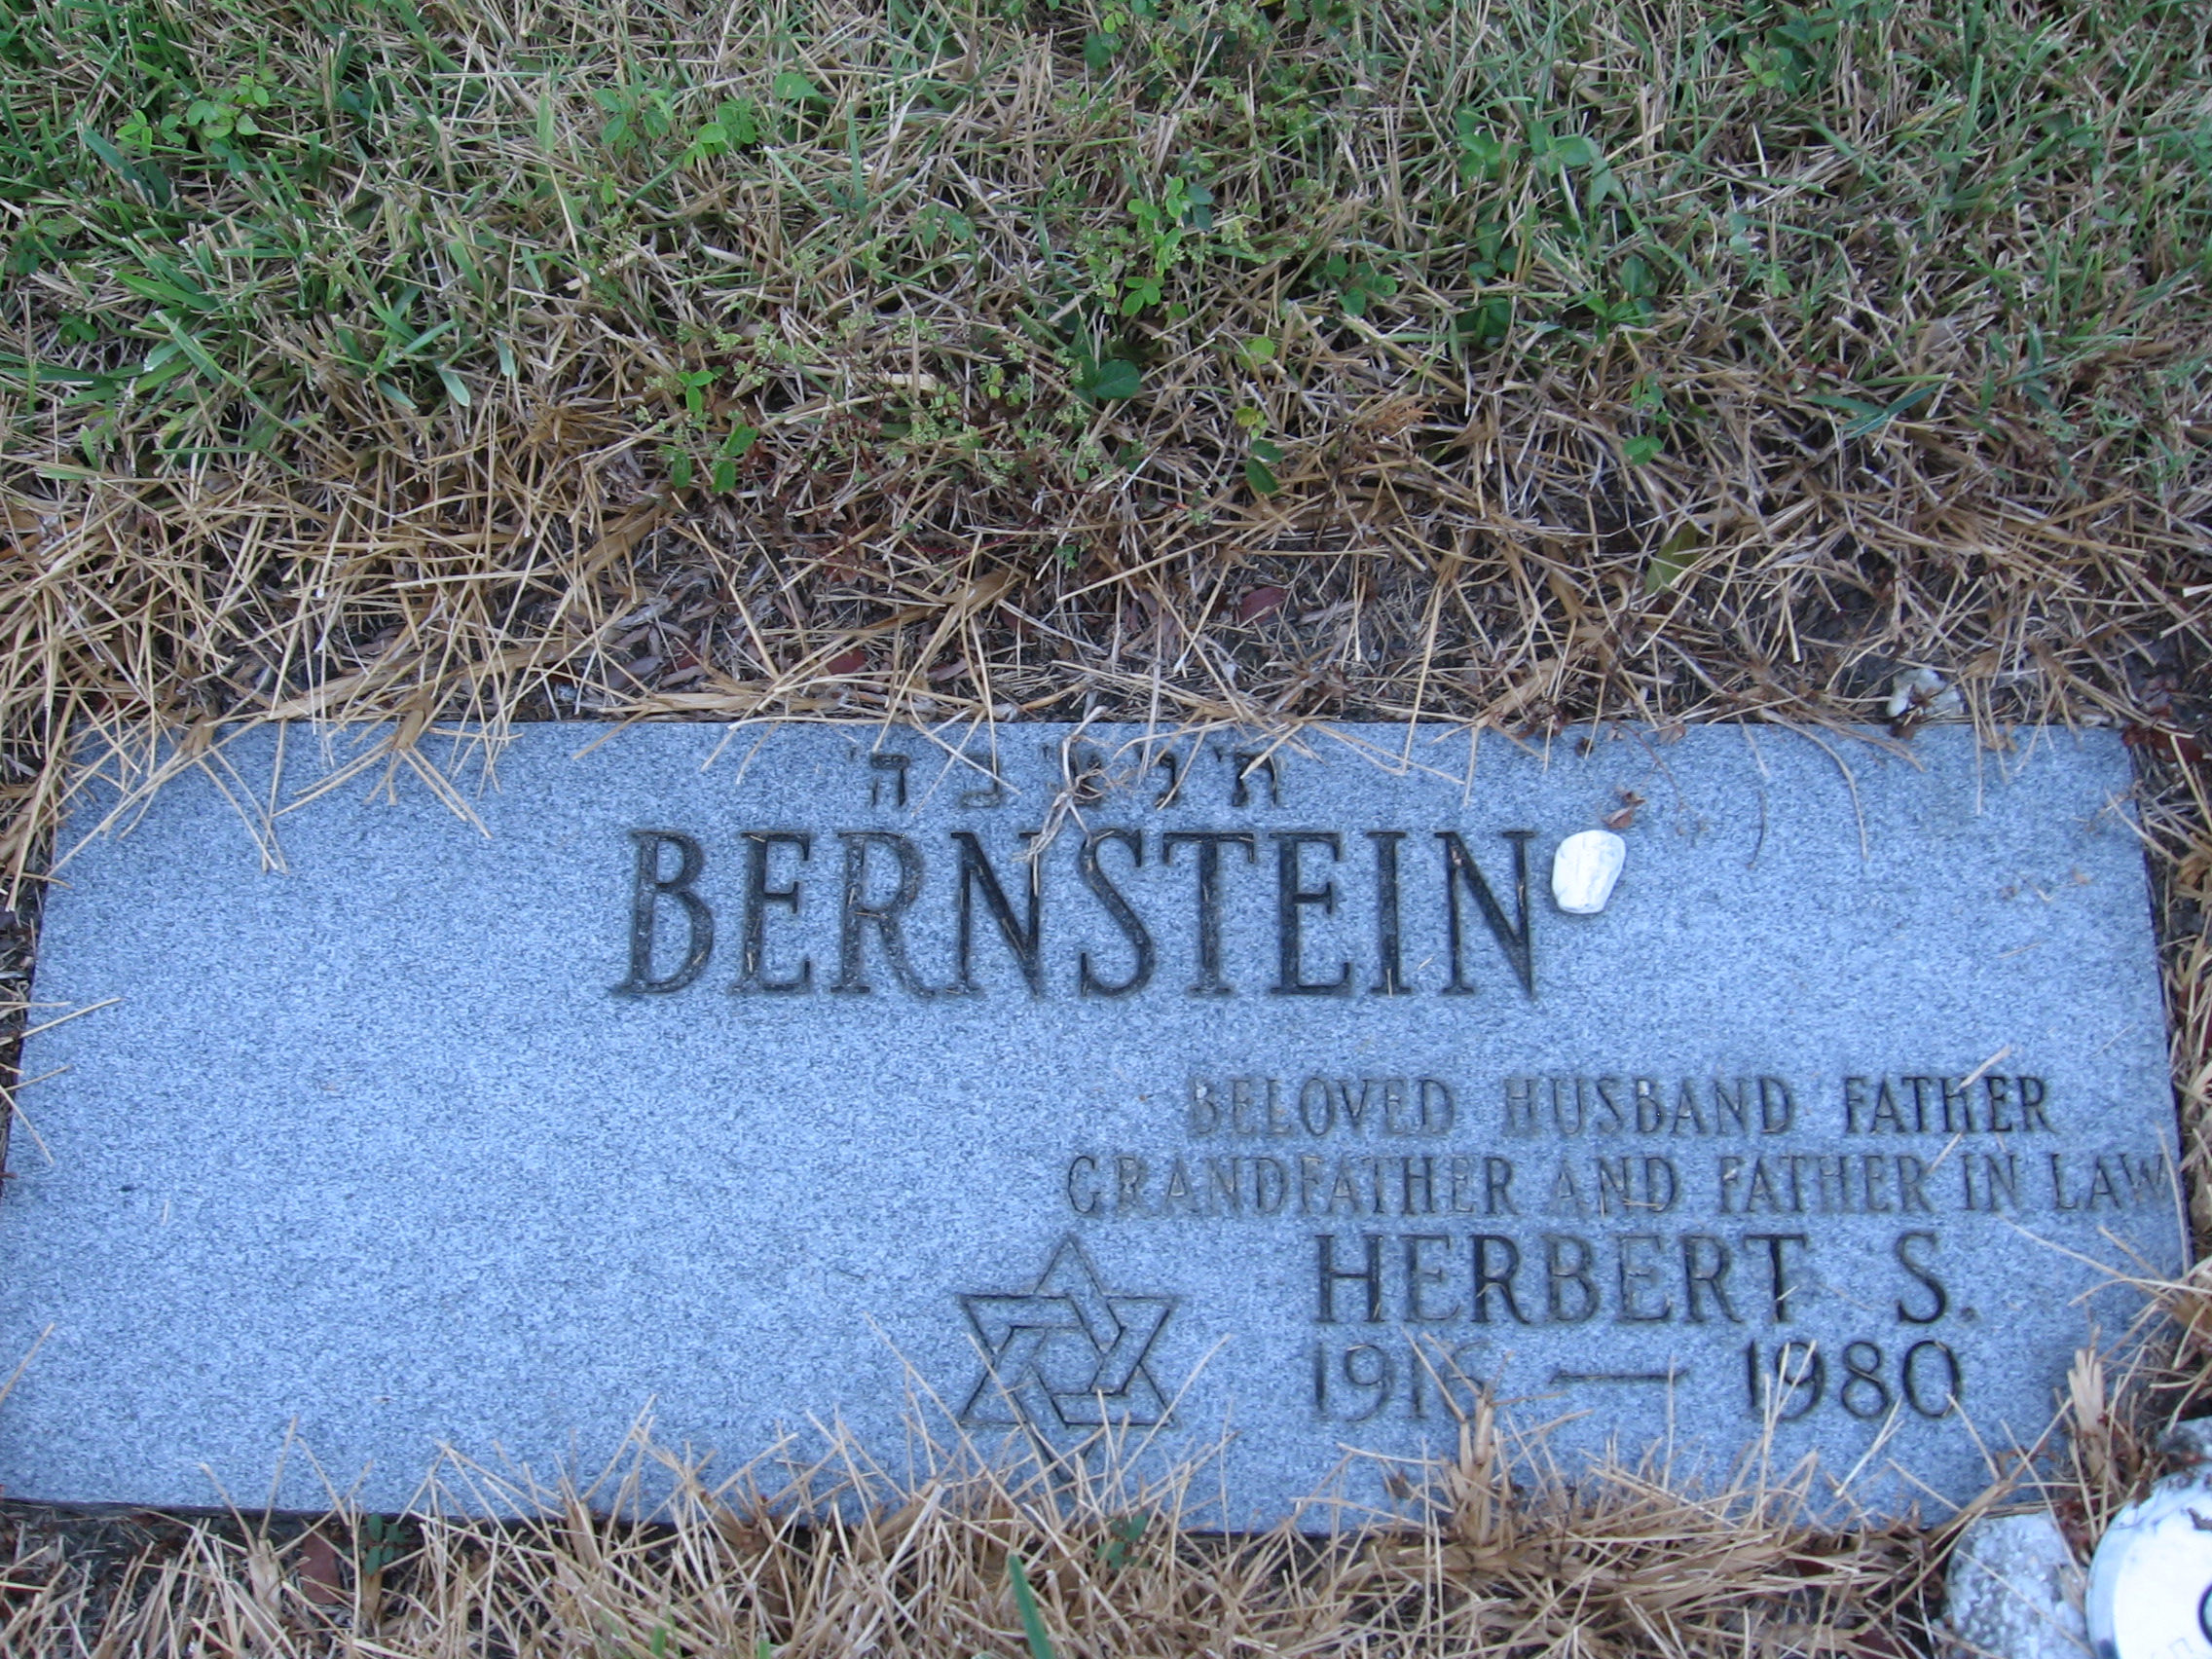 Herbert S Bernstein